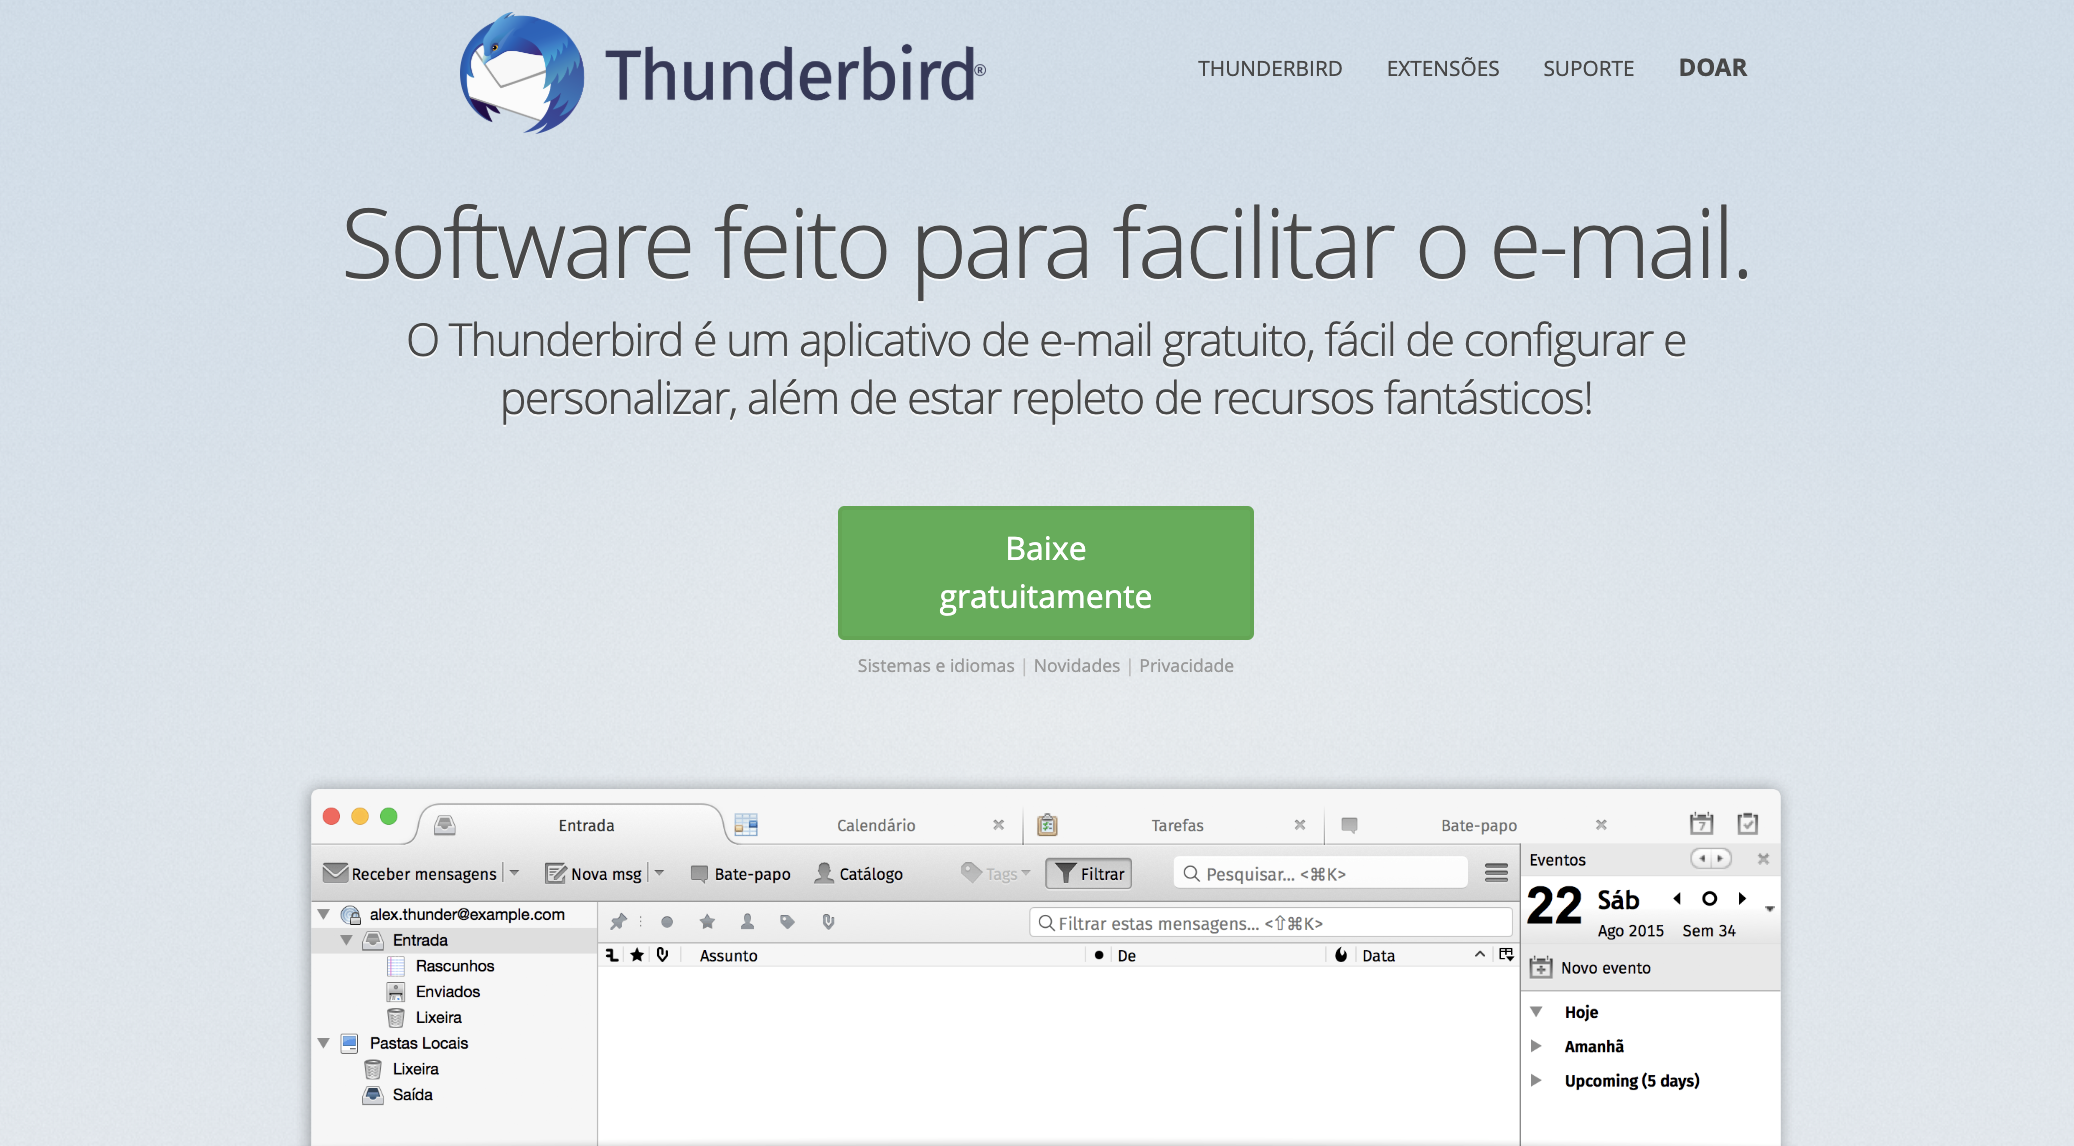 Thunderbird como exemplo de ferramenta grátis de email marketing